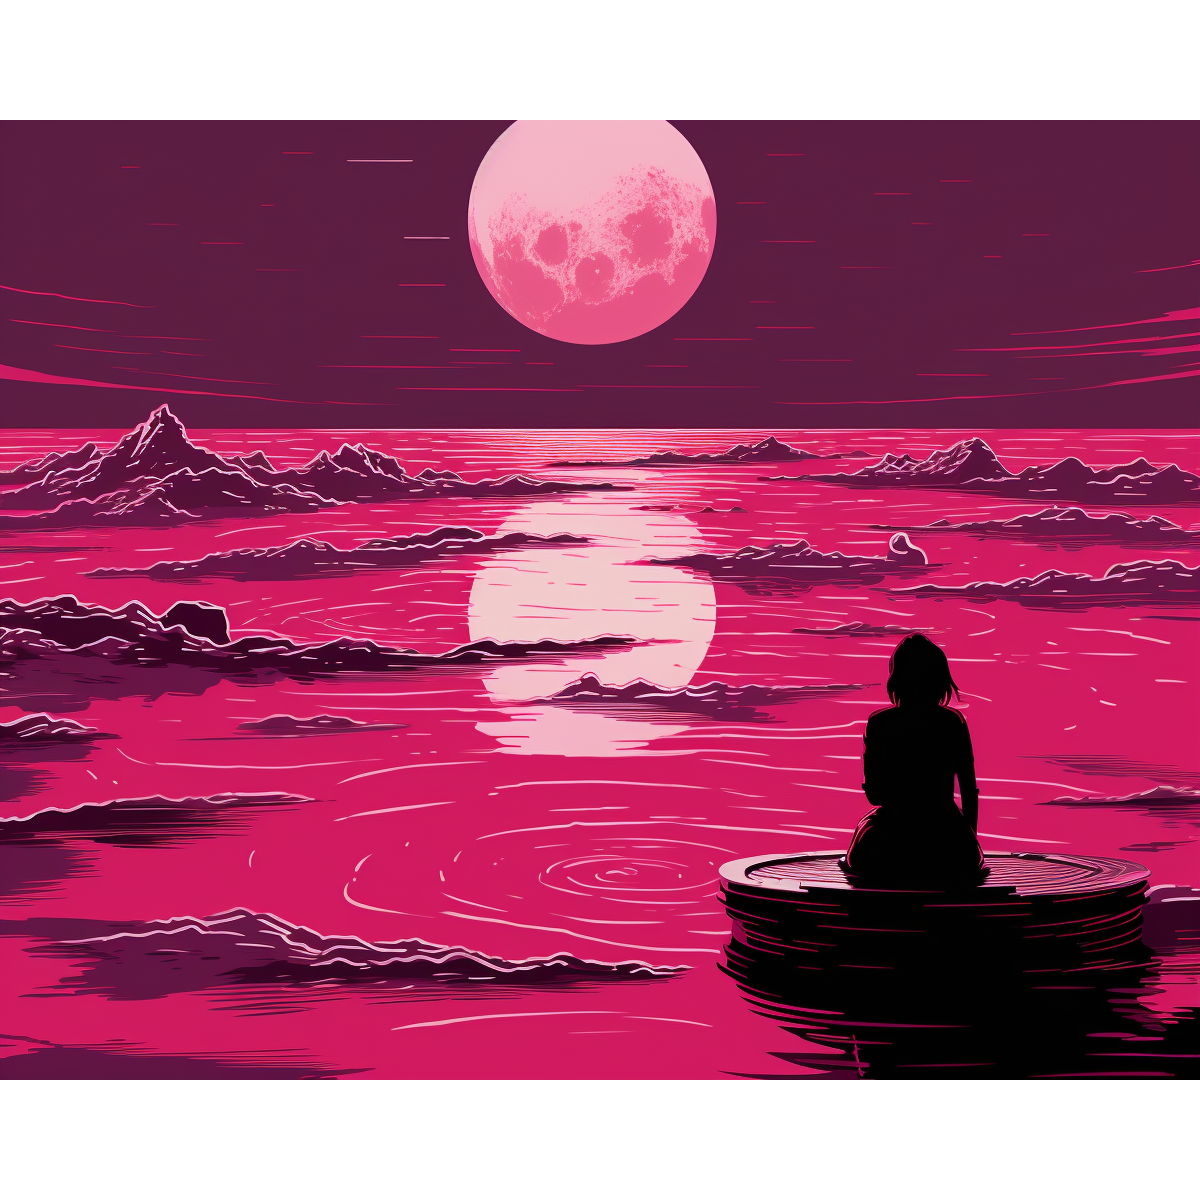 ضوء القمر الوردي